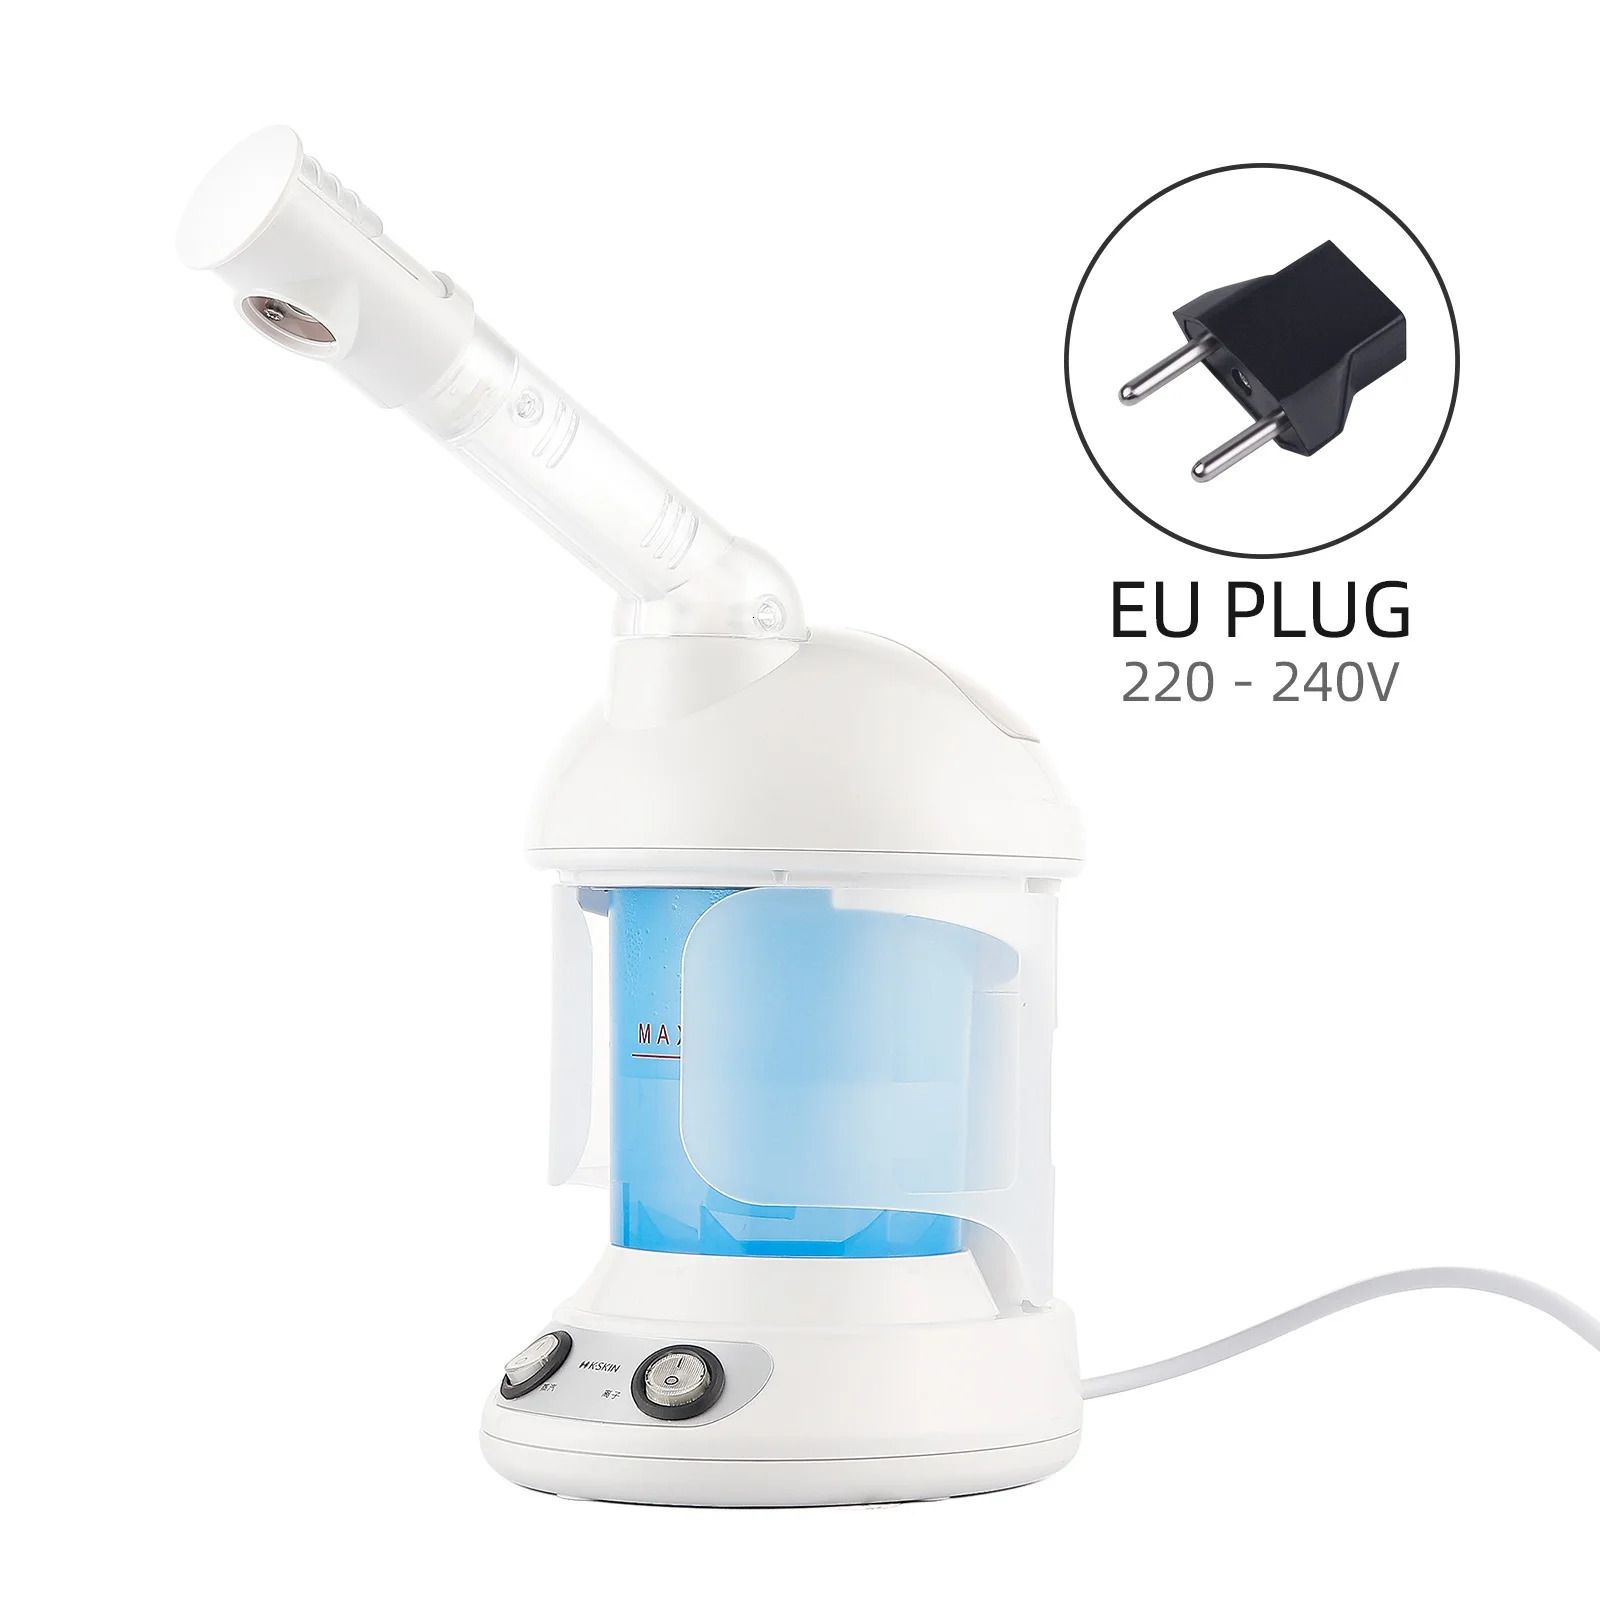 EU-plug (220-240V)